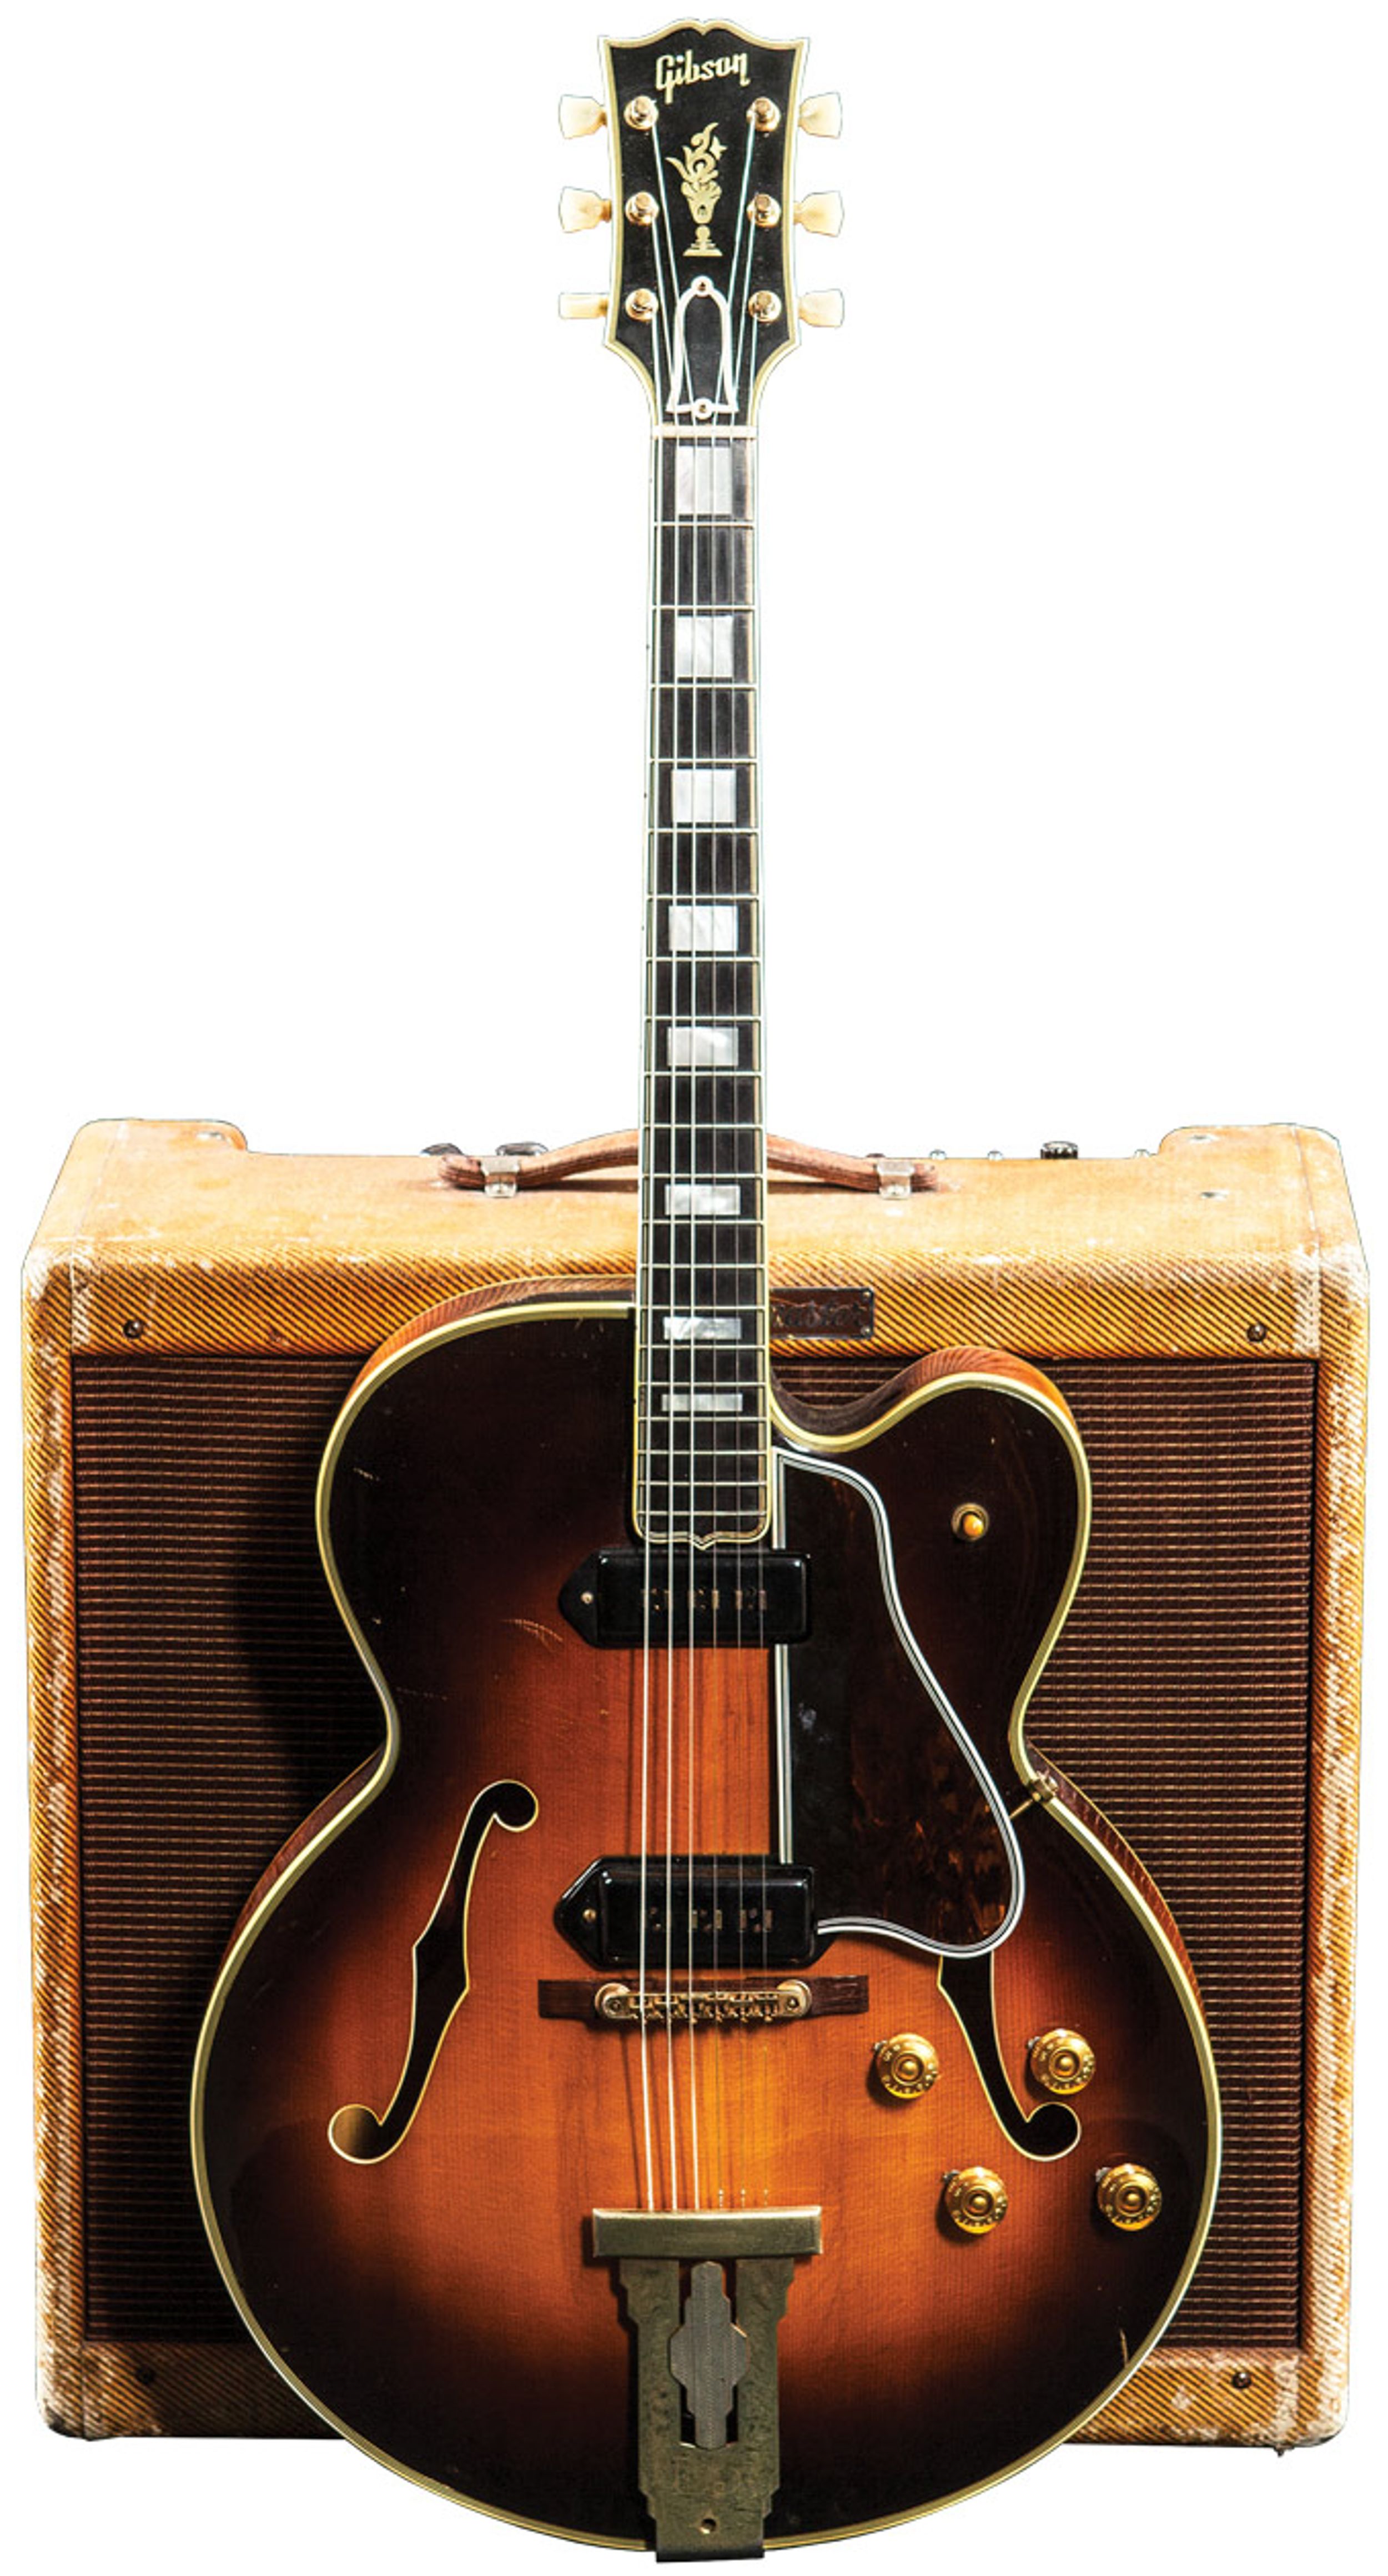 Vintage Vault: 1955 Gibson L-5 CES